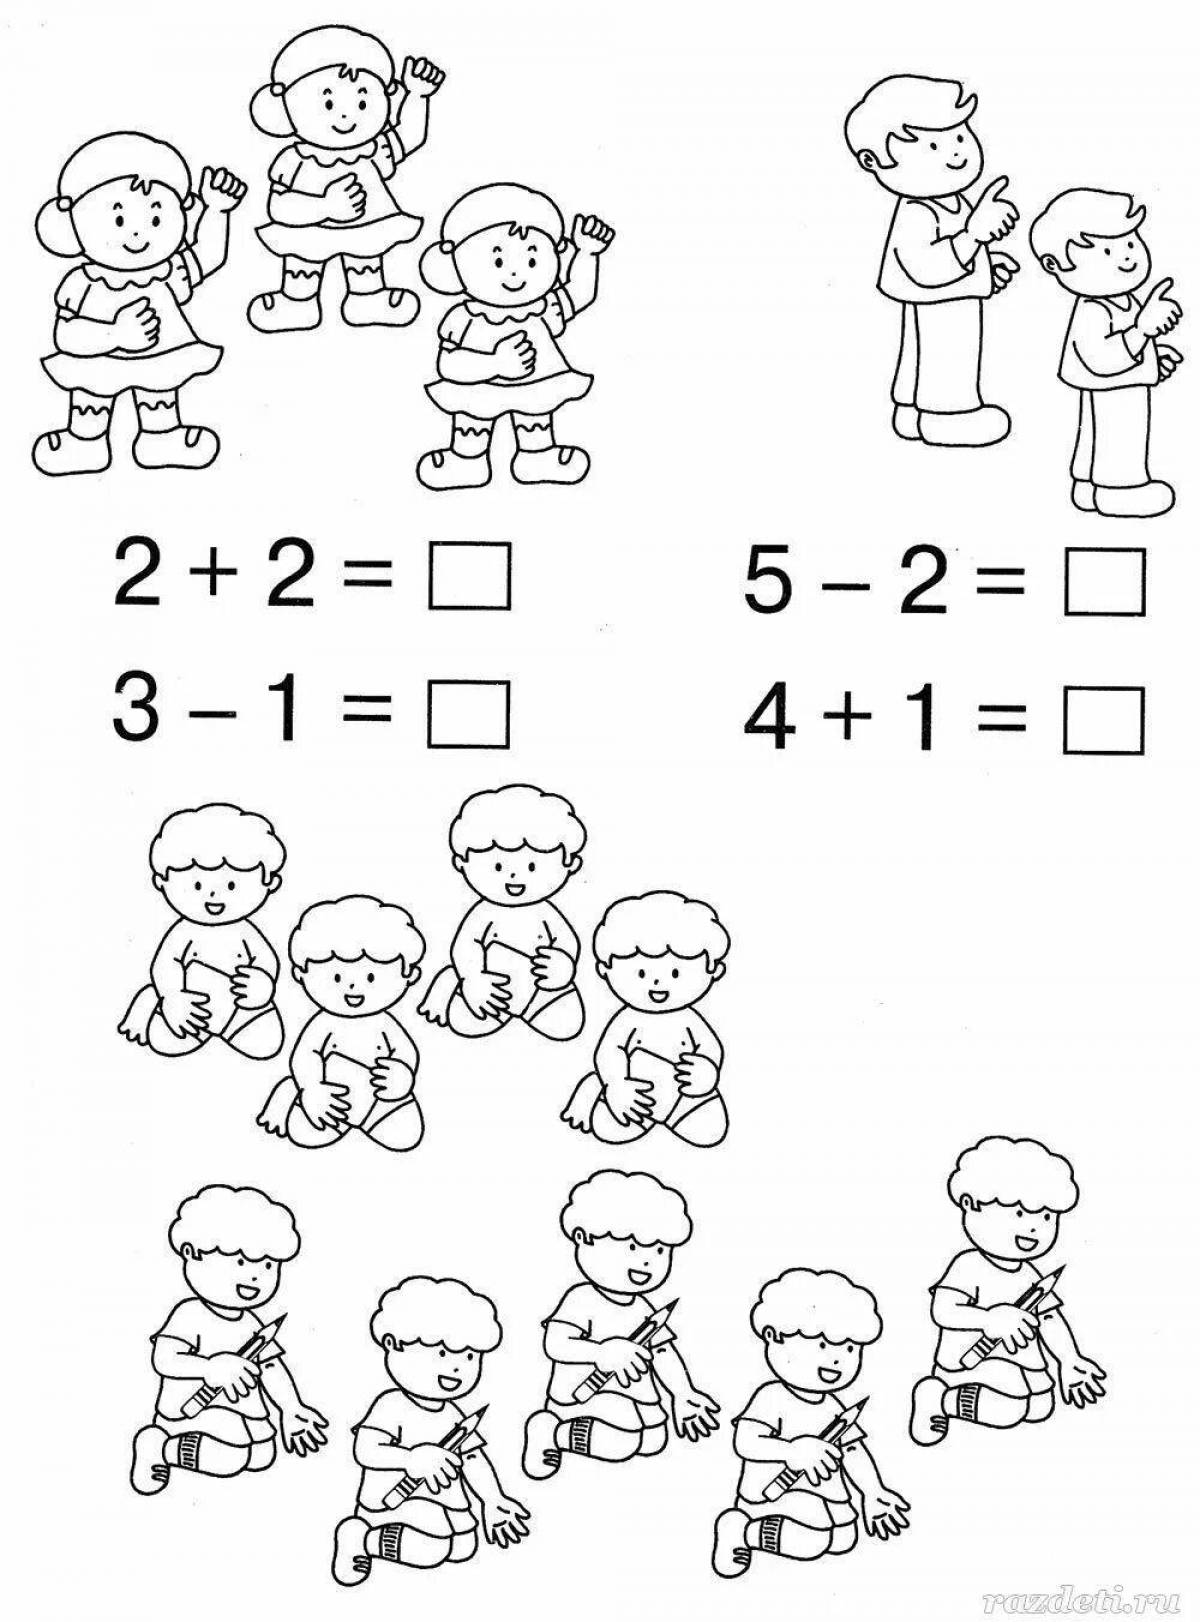 Примеры для детей детского сада. Математические примеры для дошкольников. Решение примеров для дошкольников. Картинка математика для дошколят. Раскраска математика для дошкольников.